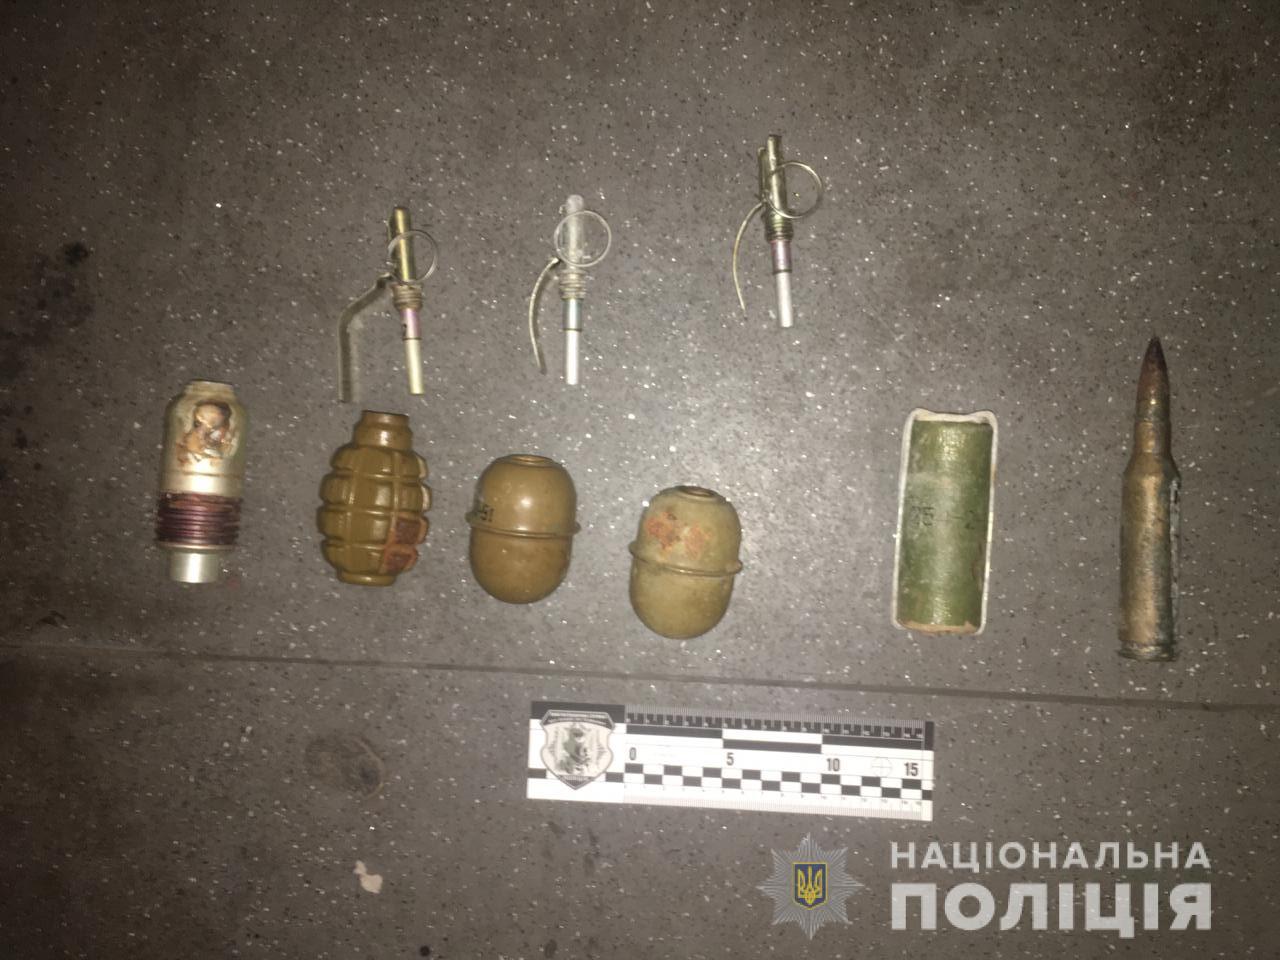 В Харьковской области на ж/д станции задержали мужчину с гранатами - полиция